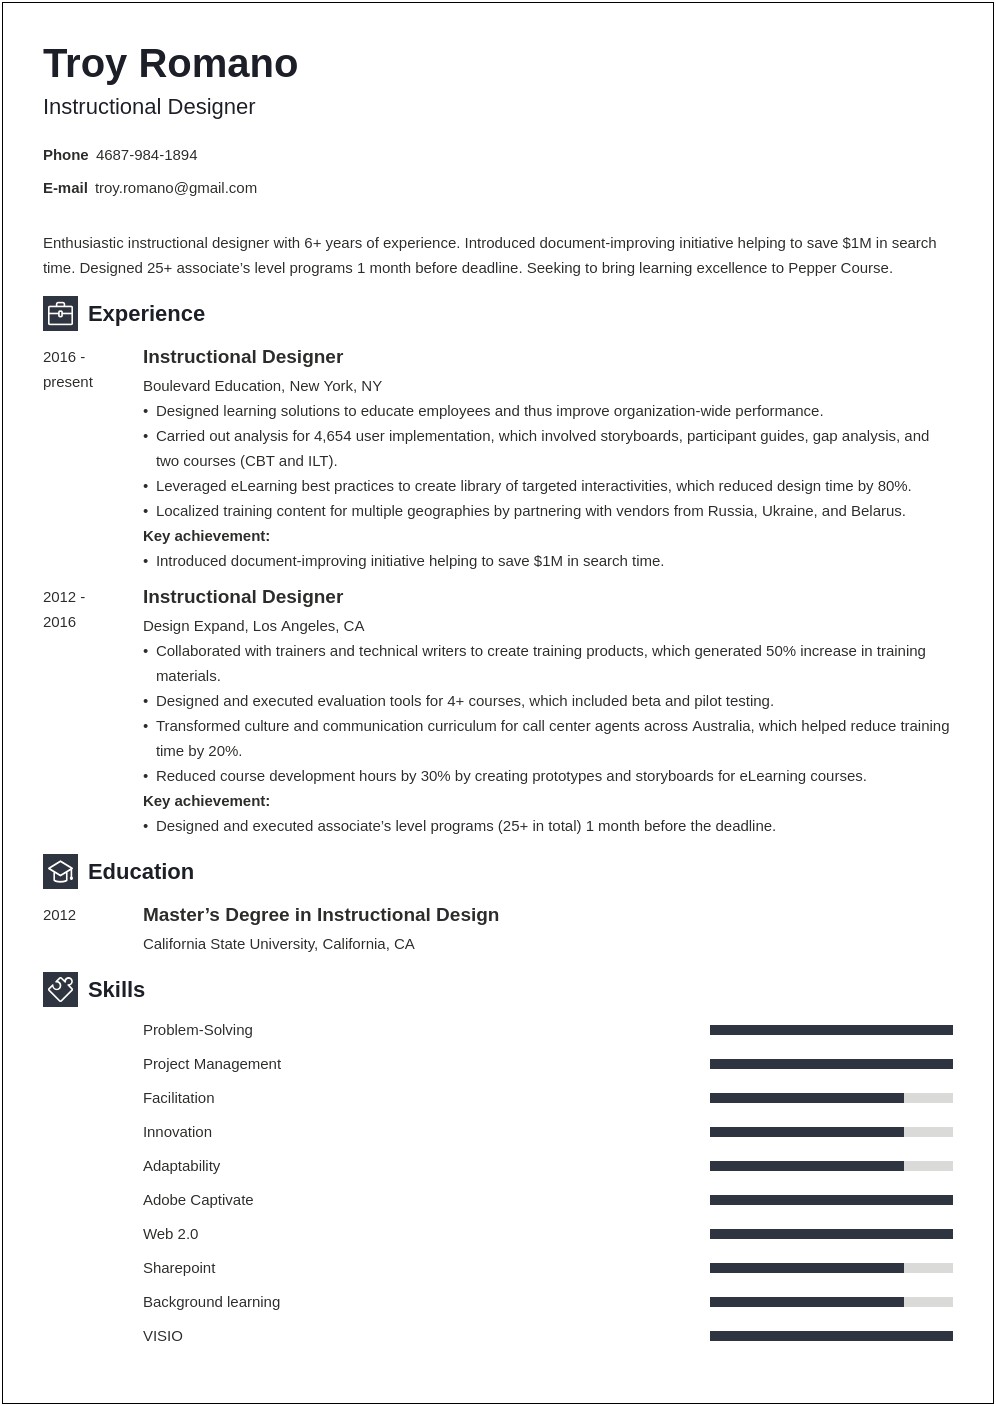 Free Resume At Instructional Designer Position Help Online